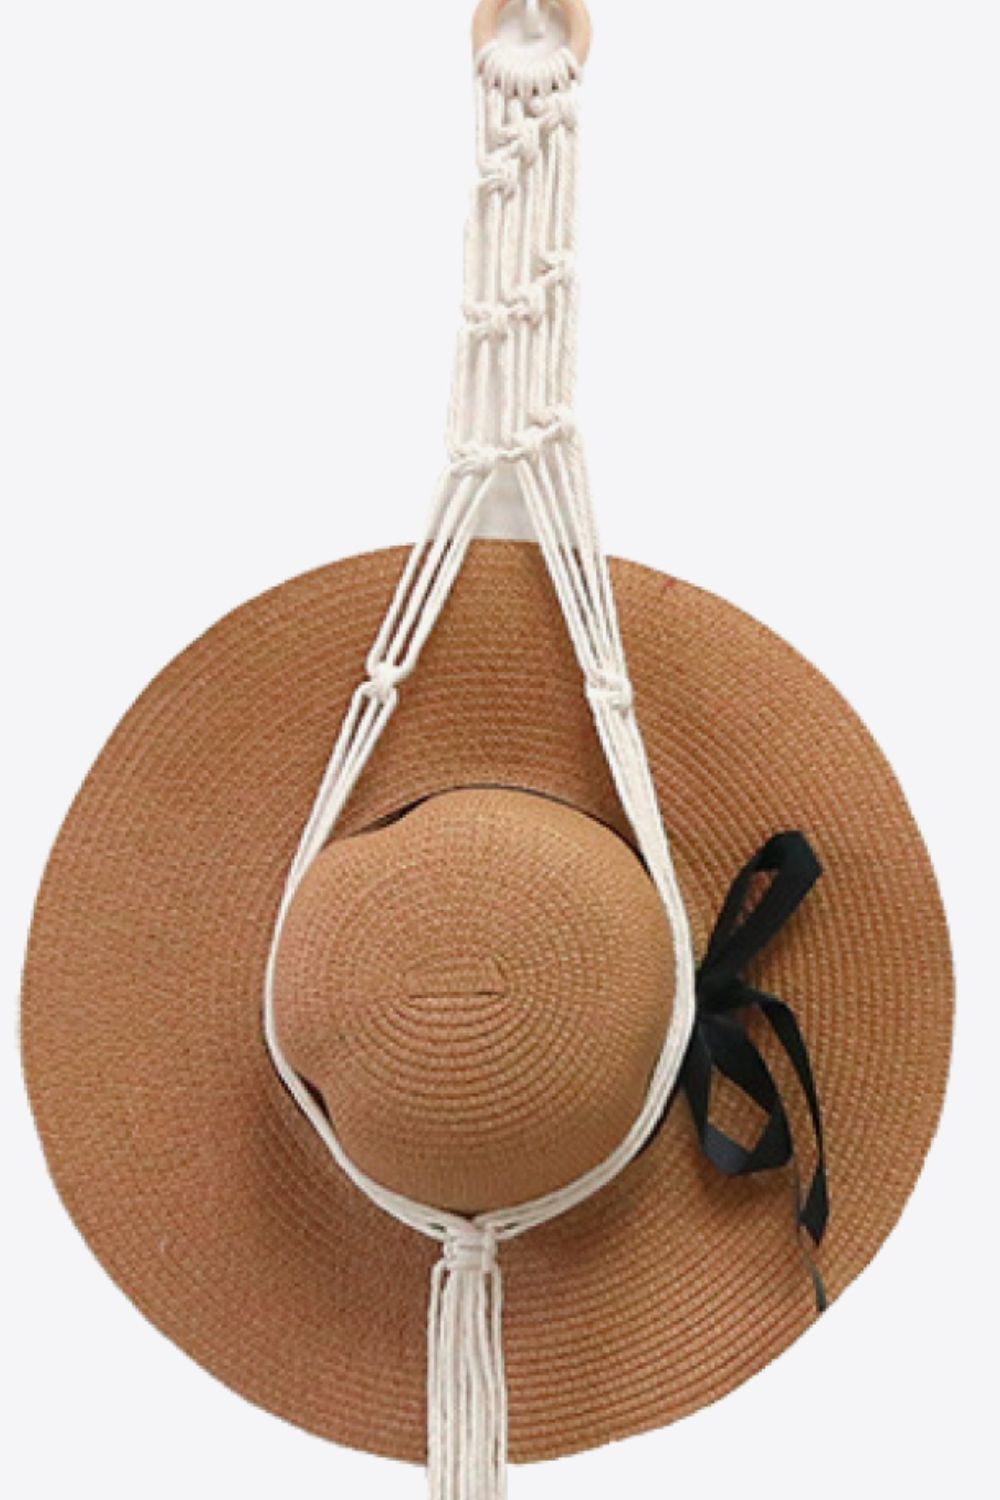 Macrame Hat Hanger - AllIn Computer